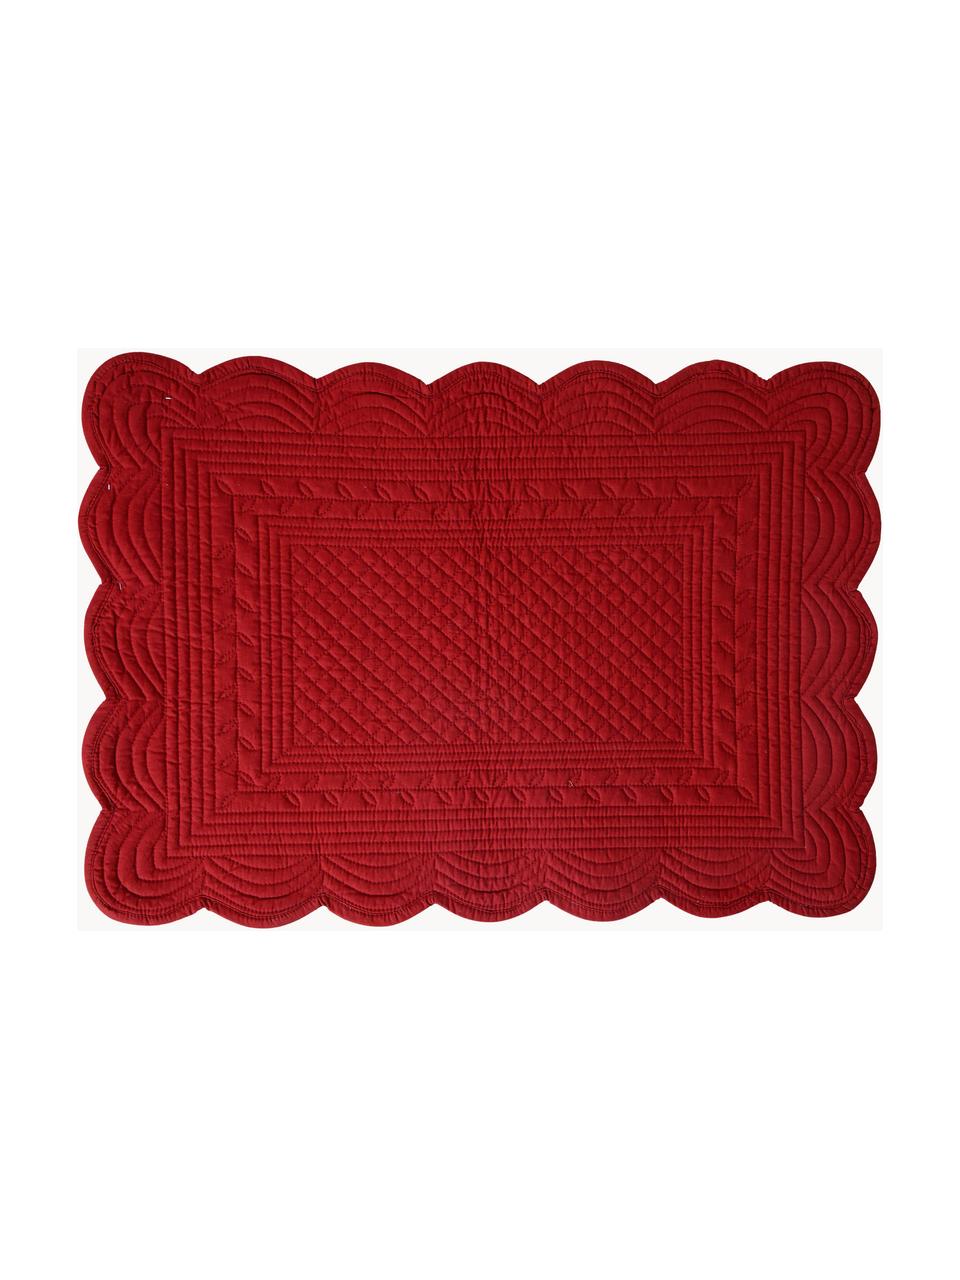 Tischsets Boutis, 2 Stück, Baumwolle, Rot, B 49 x L 34 cm